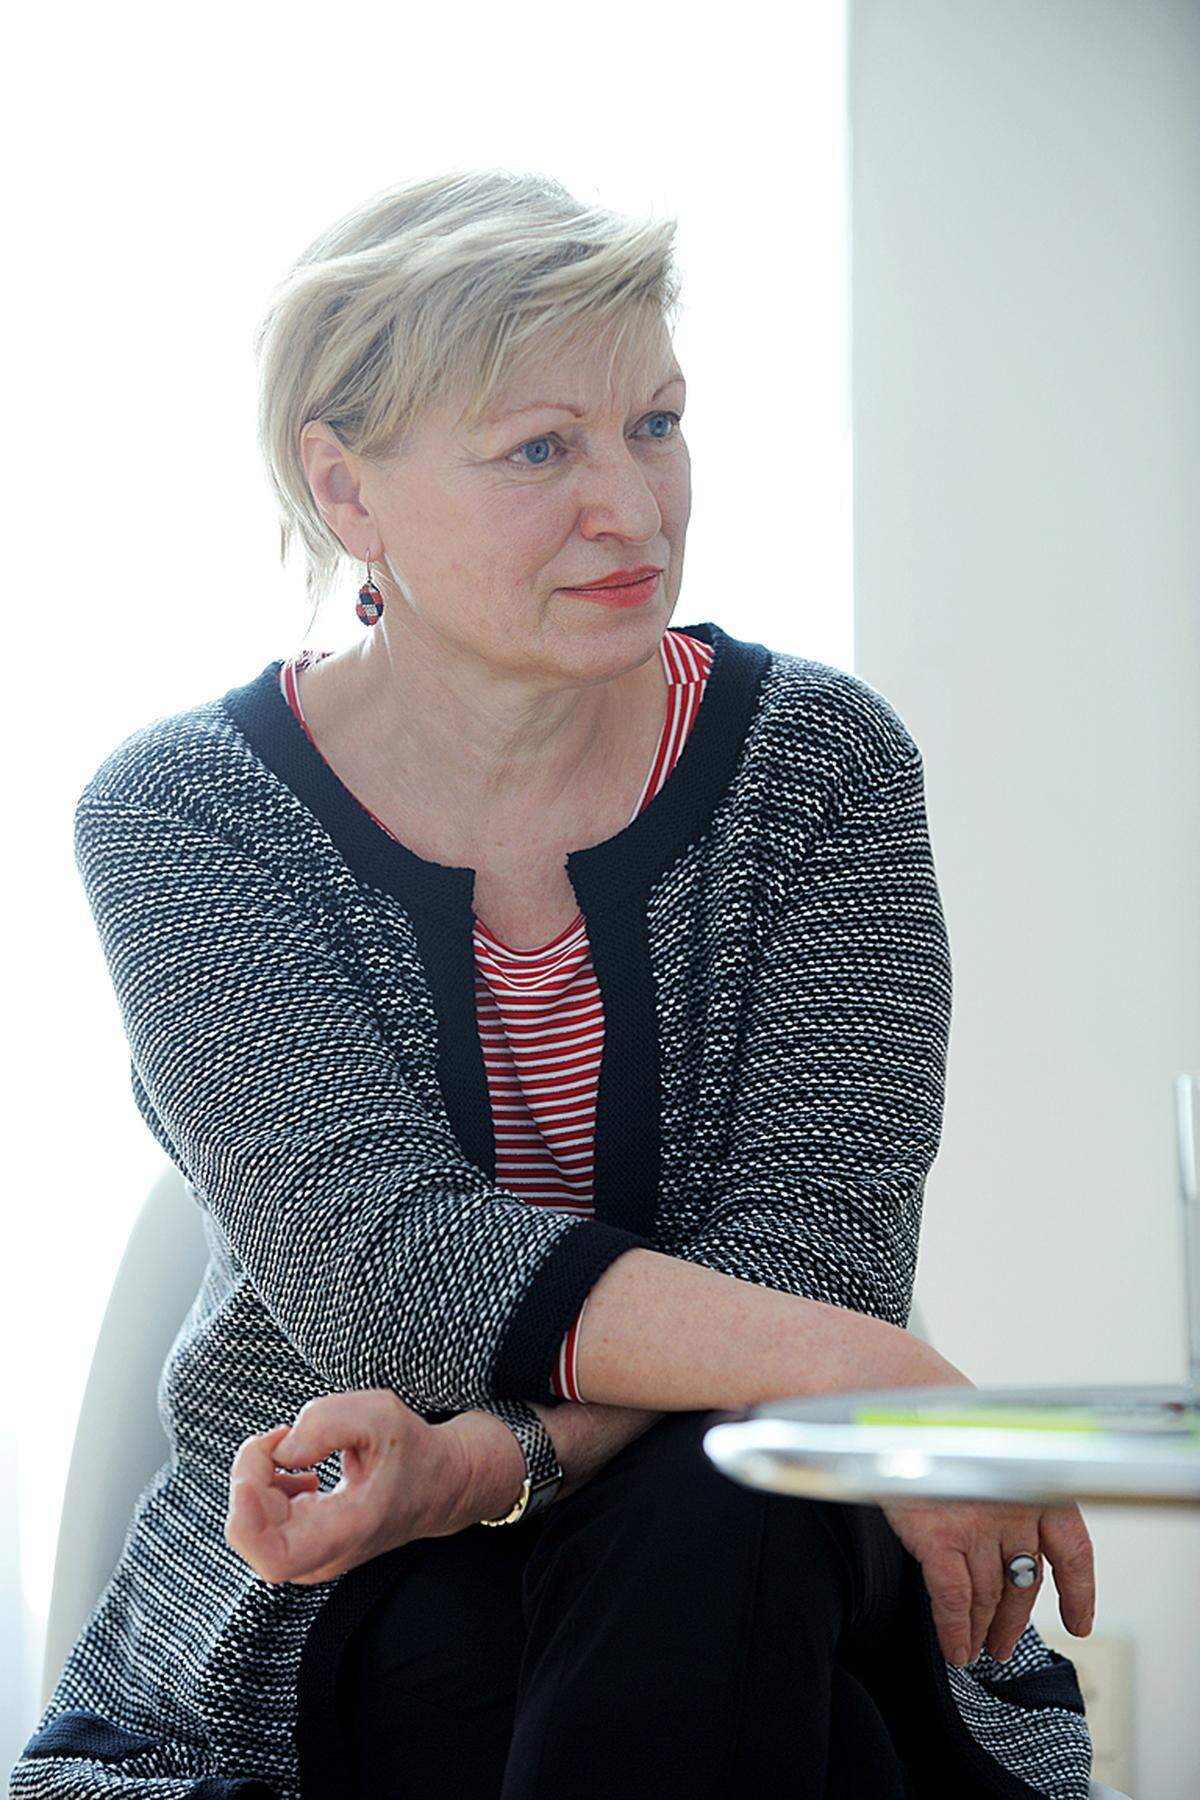 Die Wahl fiel auf Karin Bergmann, die interimistische Burgtheater-Chefin. Sie bleibt bis 2019 Direktorin. 2017 soll die Position neu ausgeschrieben werden.